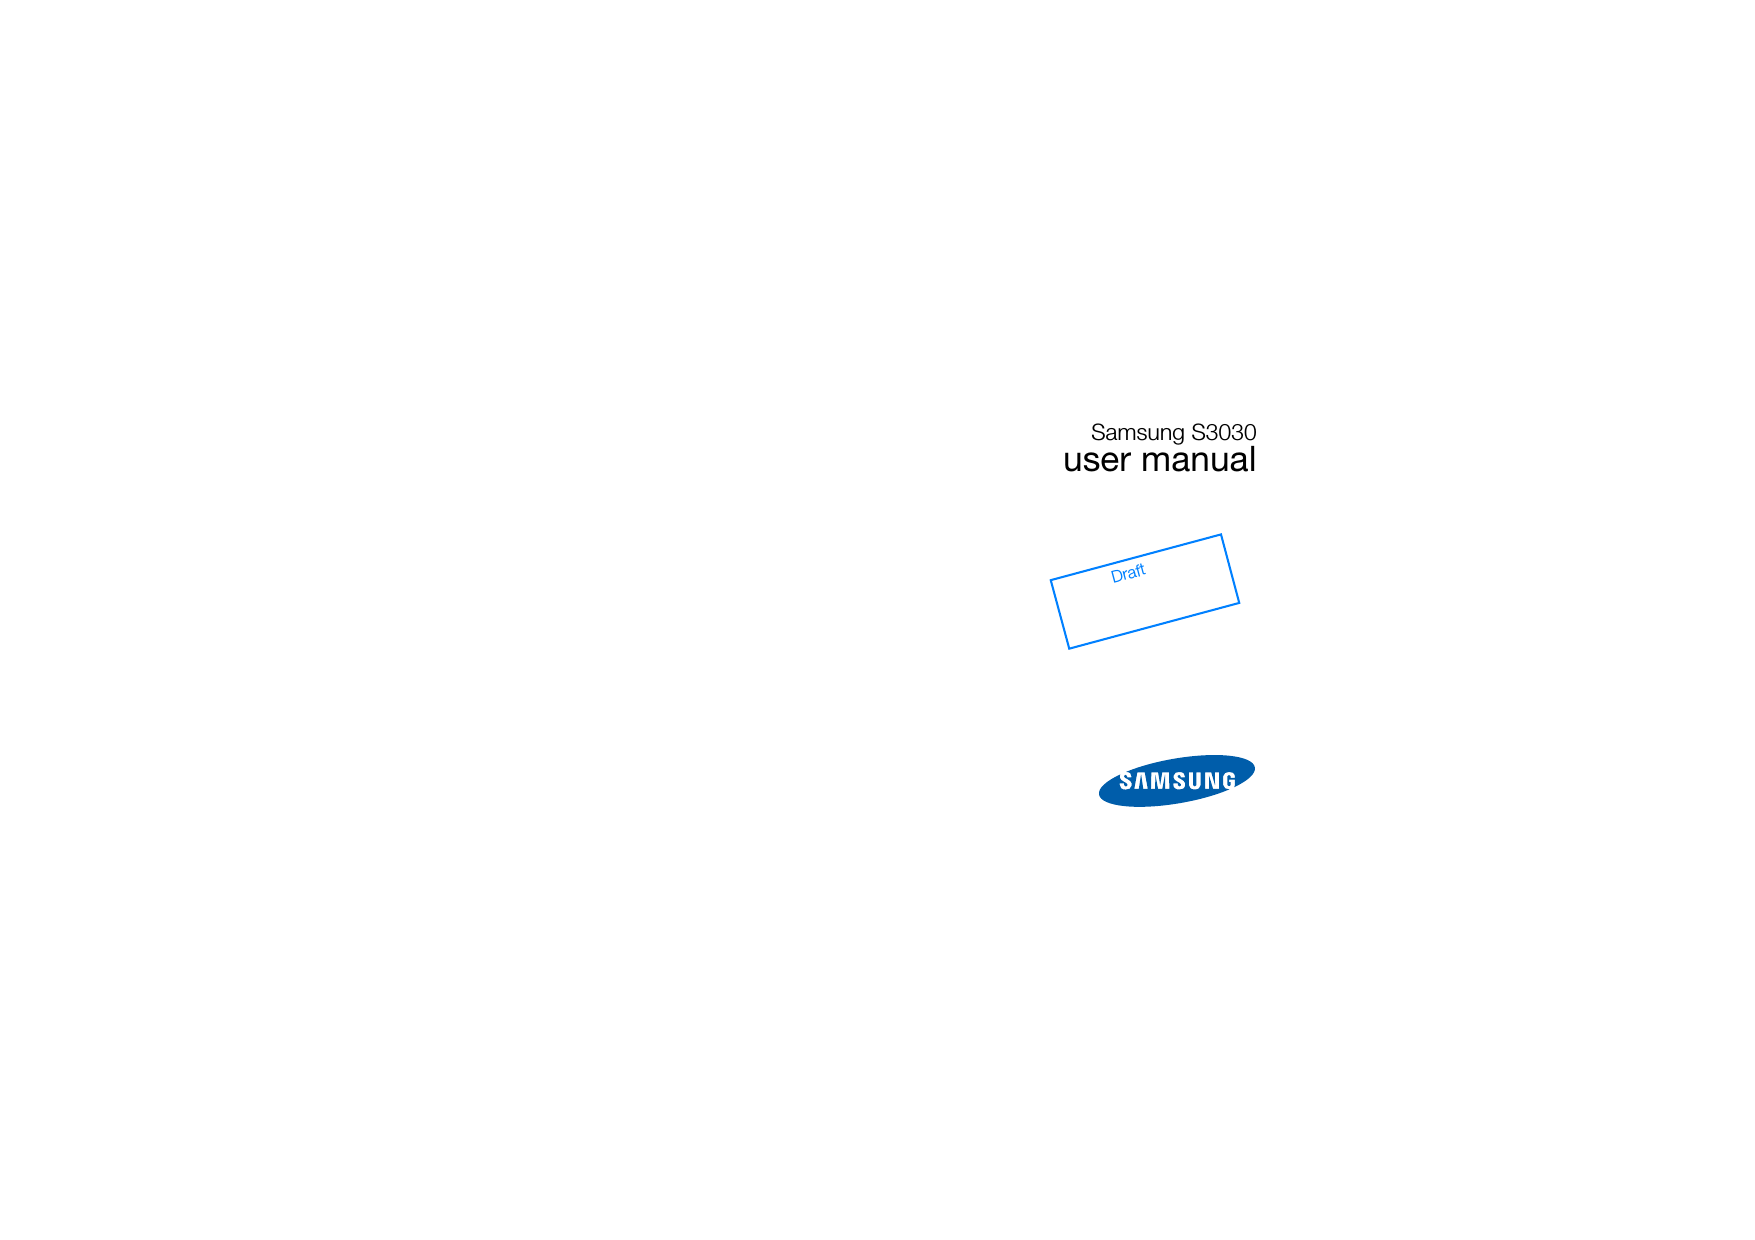 Samsung S3030user manualDraft